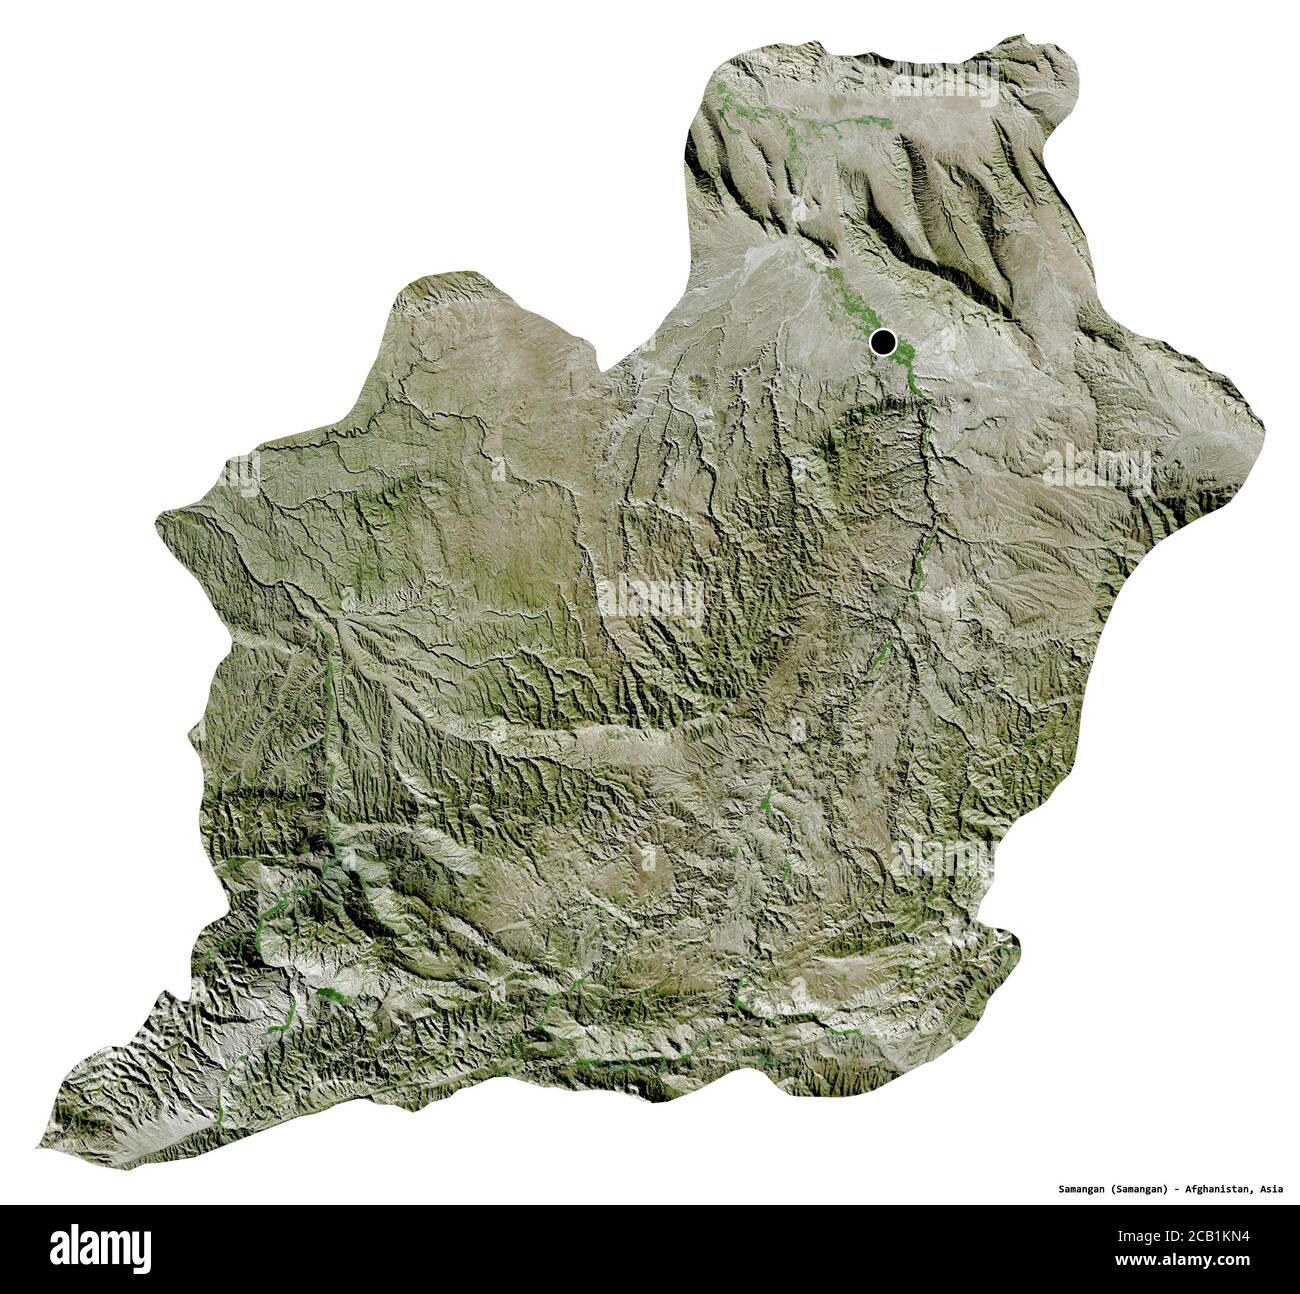 Forma di Samangan, provincia dell'Afghanistan, con la sua capitale isolata su sfondo bianco. Immagini satellitari. Rendering 3D Foto Stock